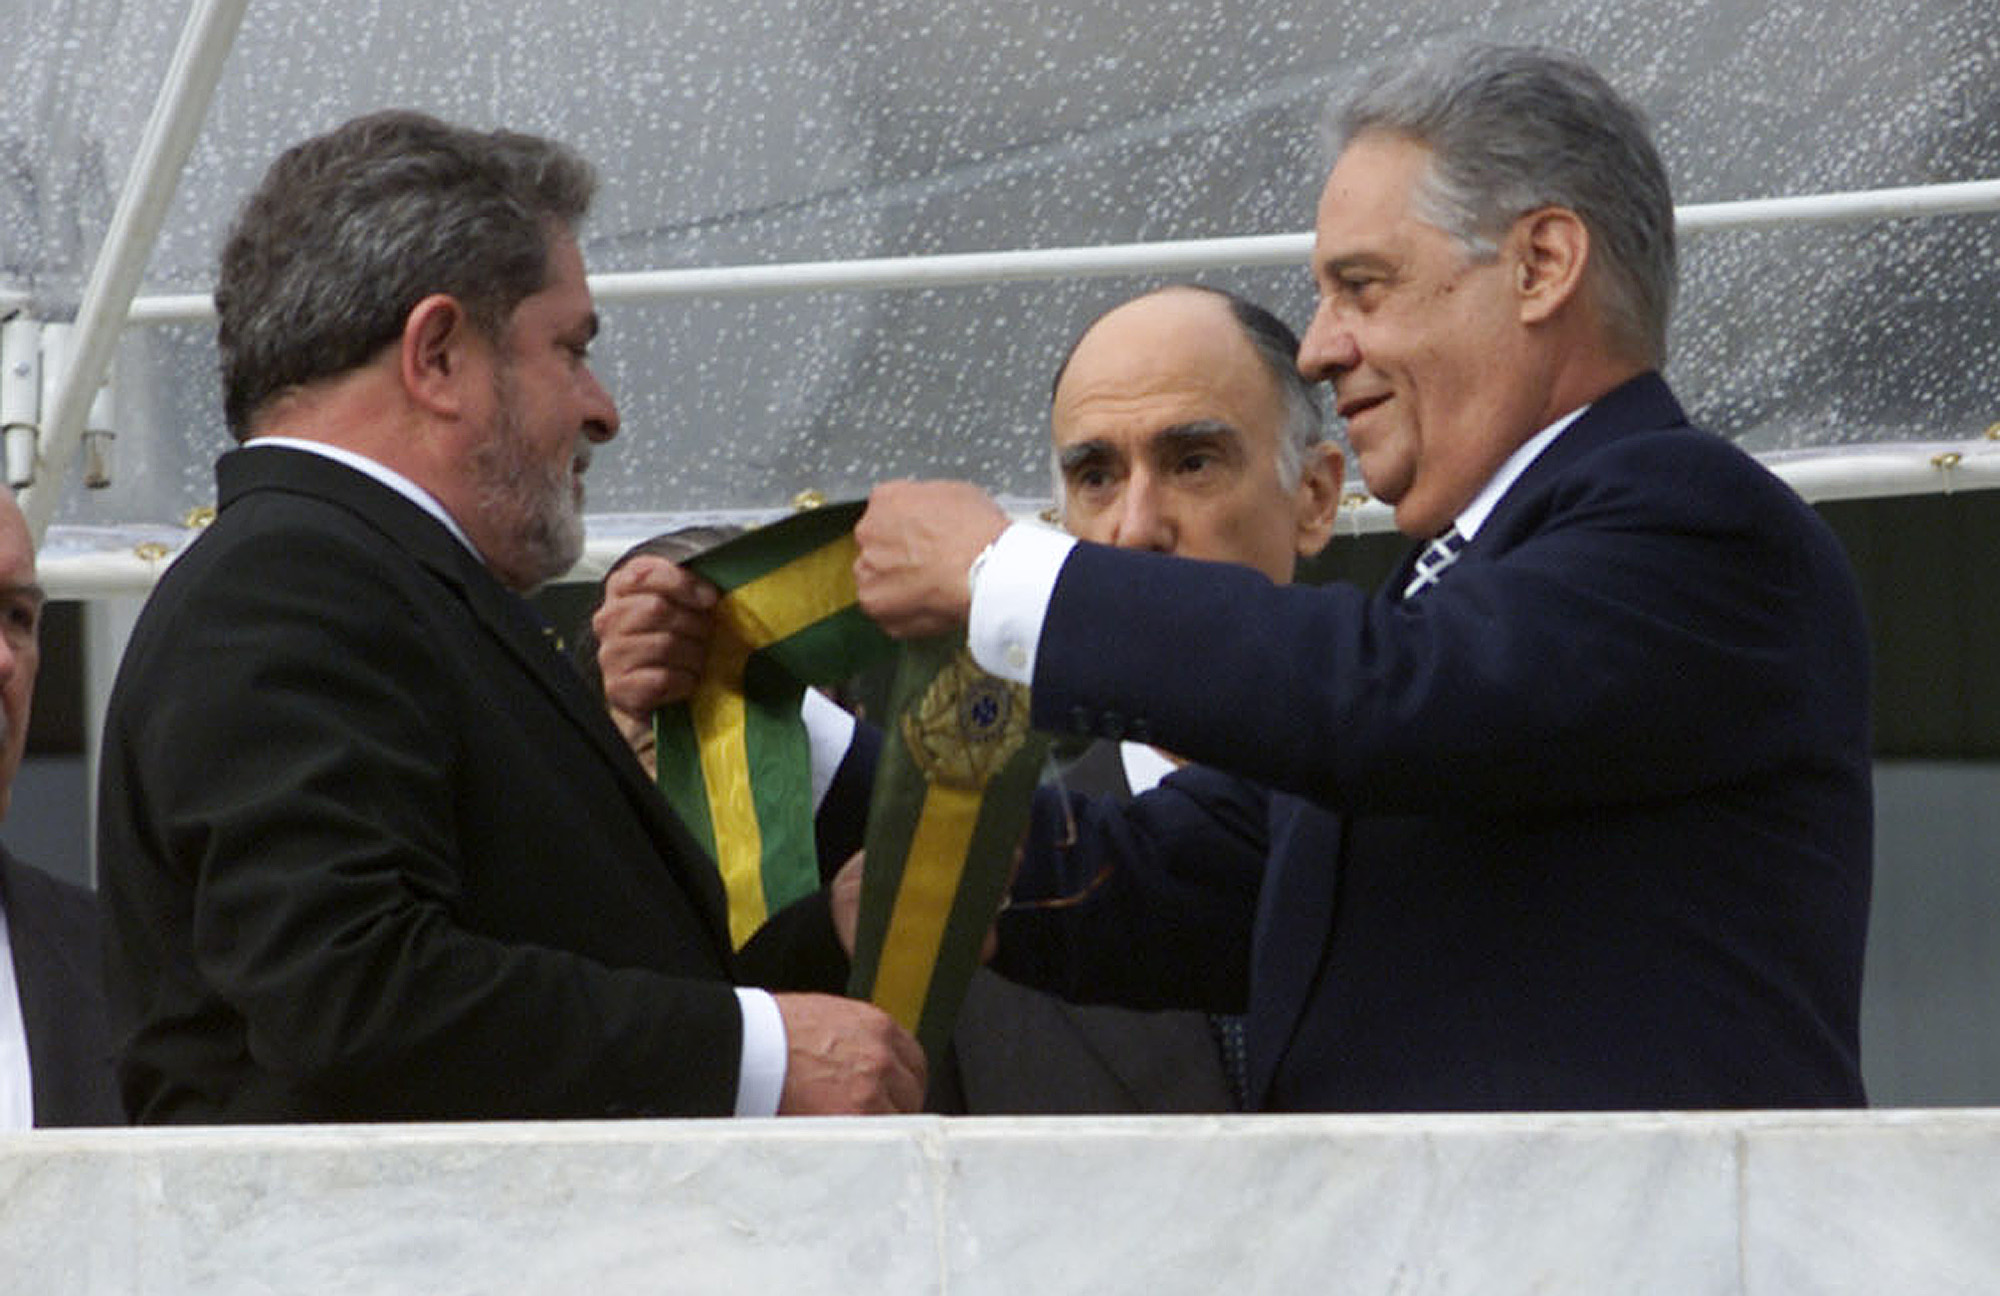 Luiz Inacio Lula da Silva receives the presidential sash from Fernando Henrique Cardoso on January 1, 2003.